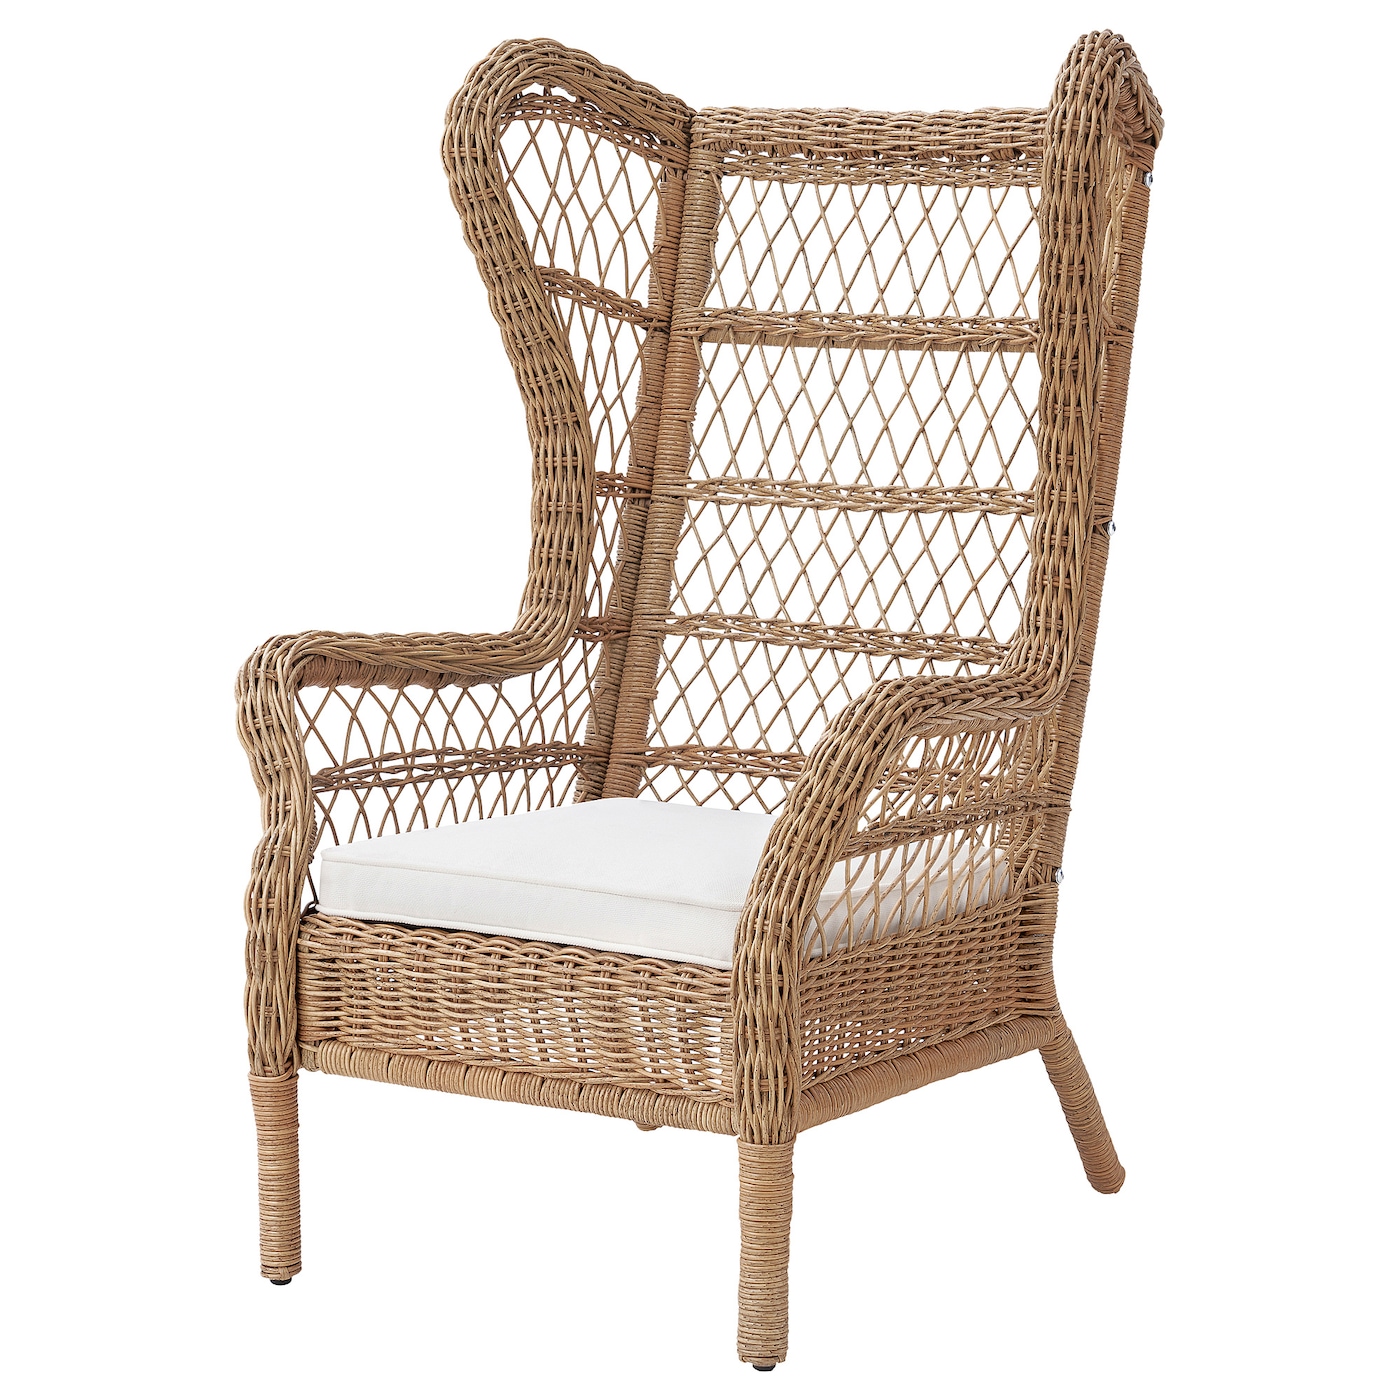 РИСХОЛЬМЕН Кресло для дома/сада, Ярпён/ДУвхольмен белый RISHOLMEN IKEA ikea торпарё легкое кресло для дома сада